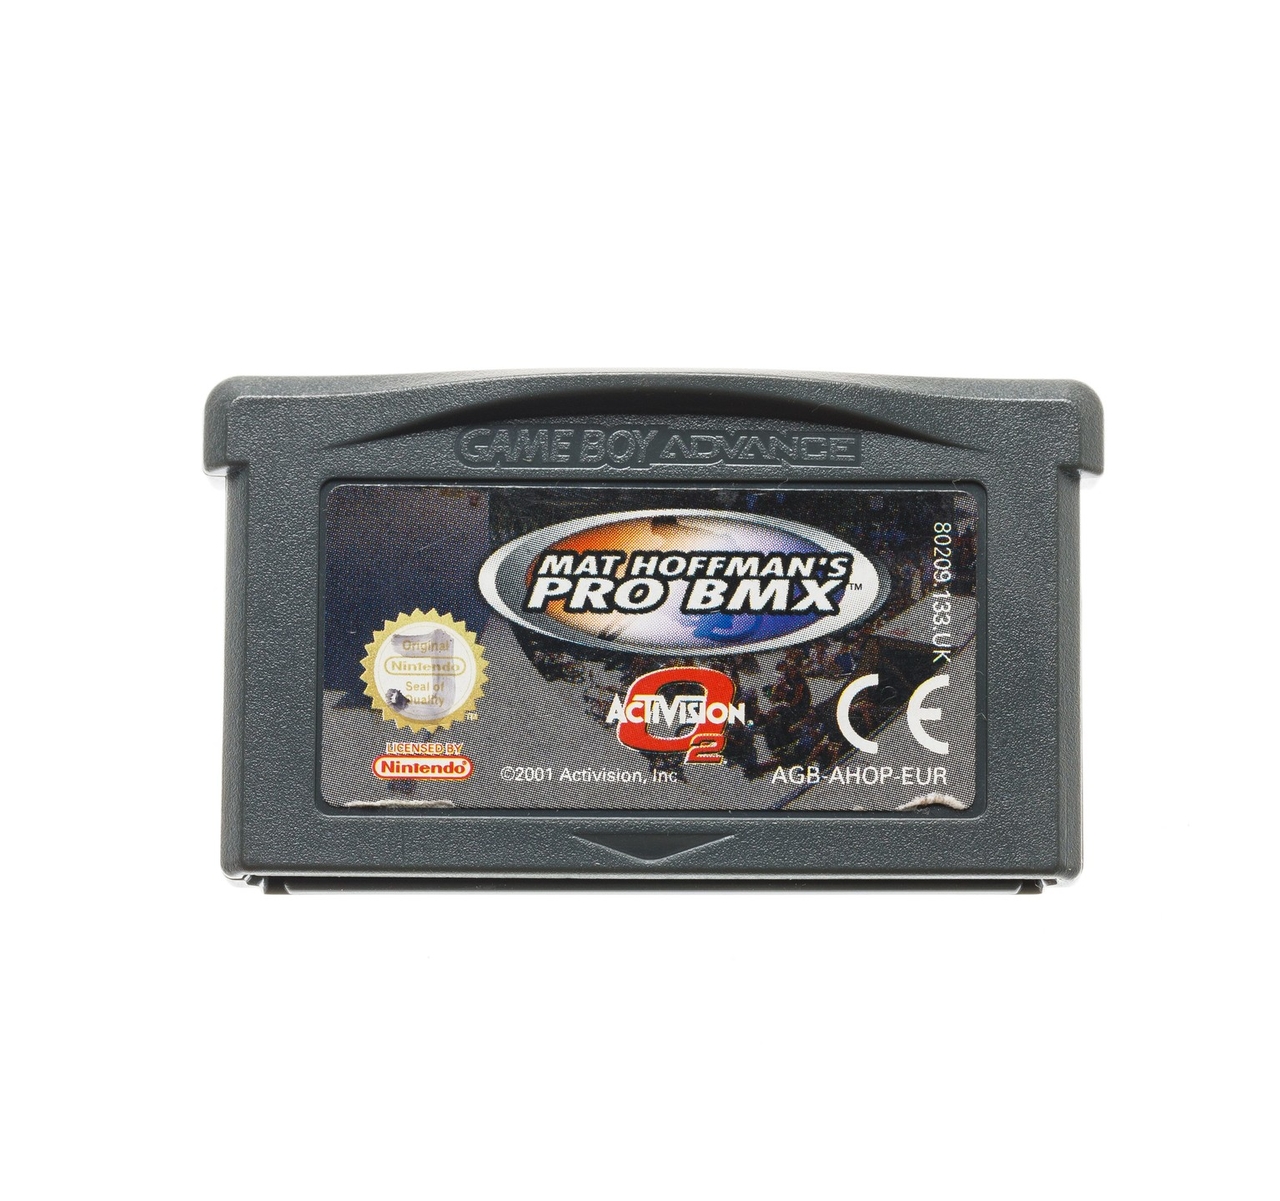 Mat Hoffman's Pro BMX - Gameboy Advance Games